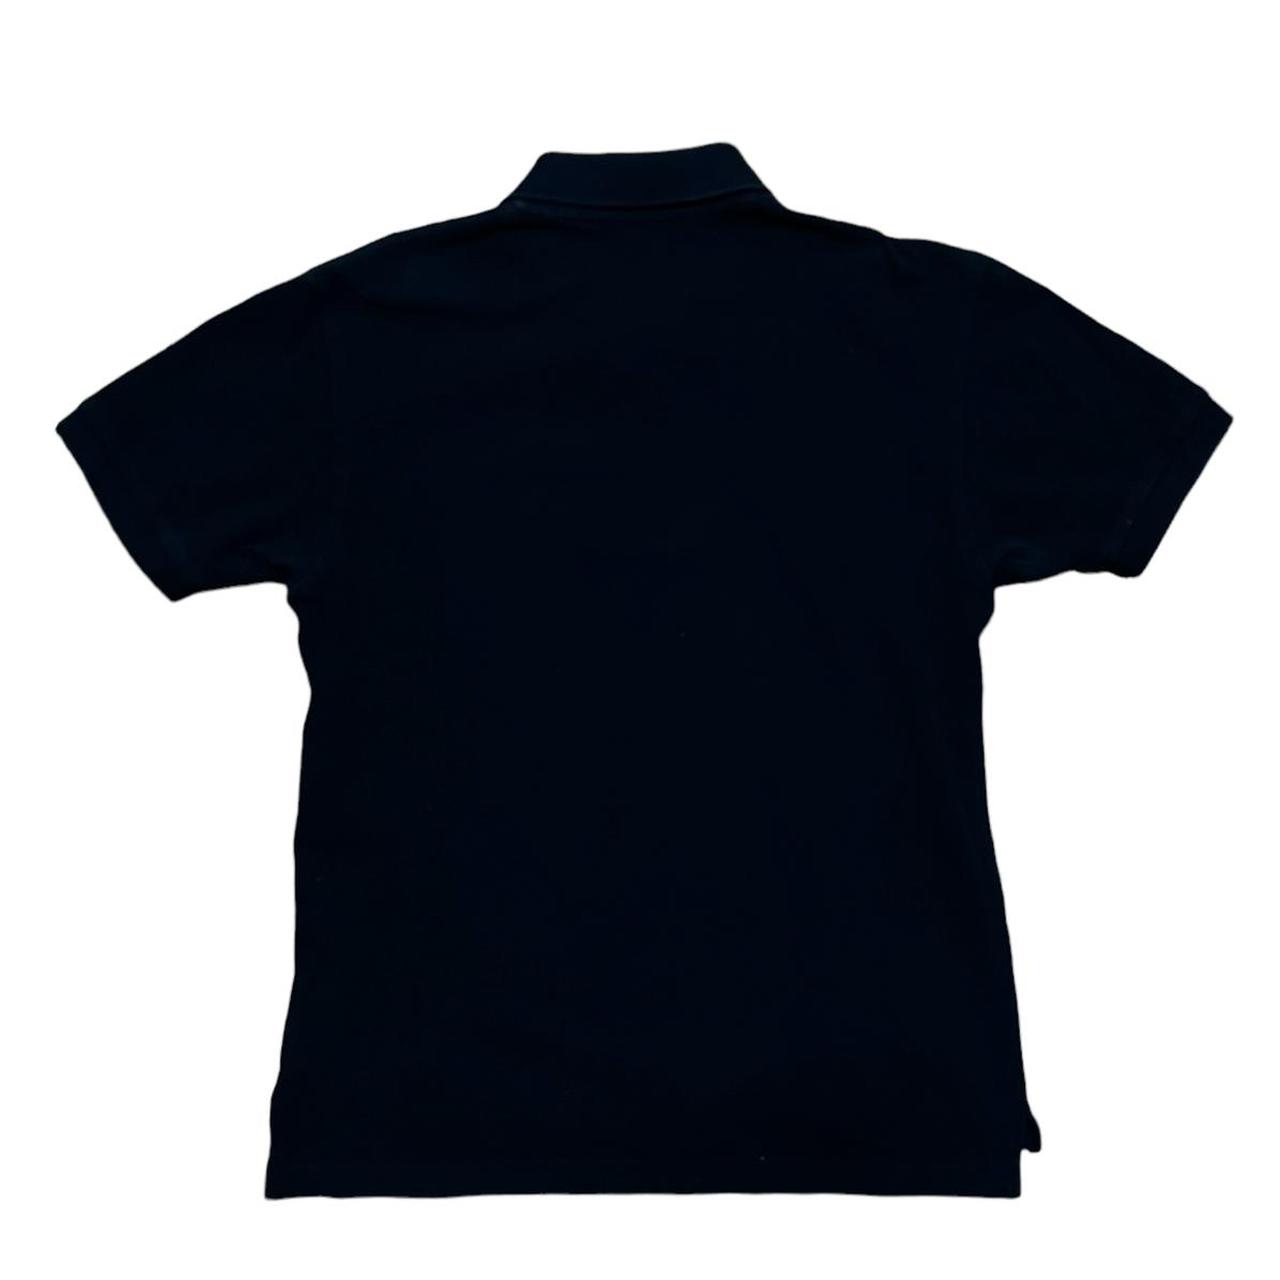 Comme des Garçons Play Men's Black and Blue T-shirt (4)